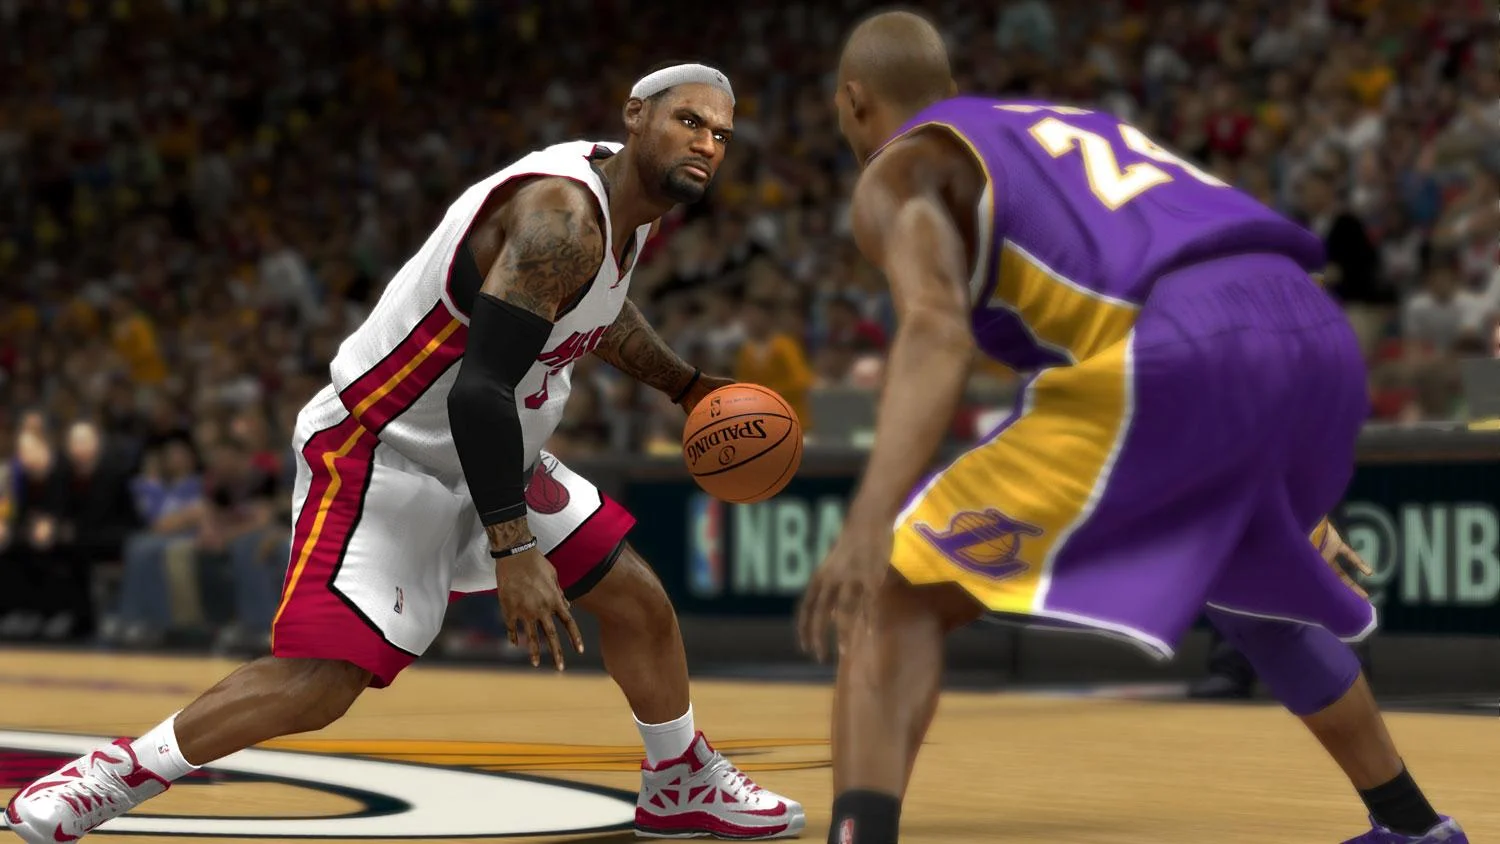 Опубликован трейлер NBA 2K14 для PlayStation 4 - изображение обложка